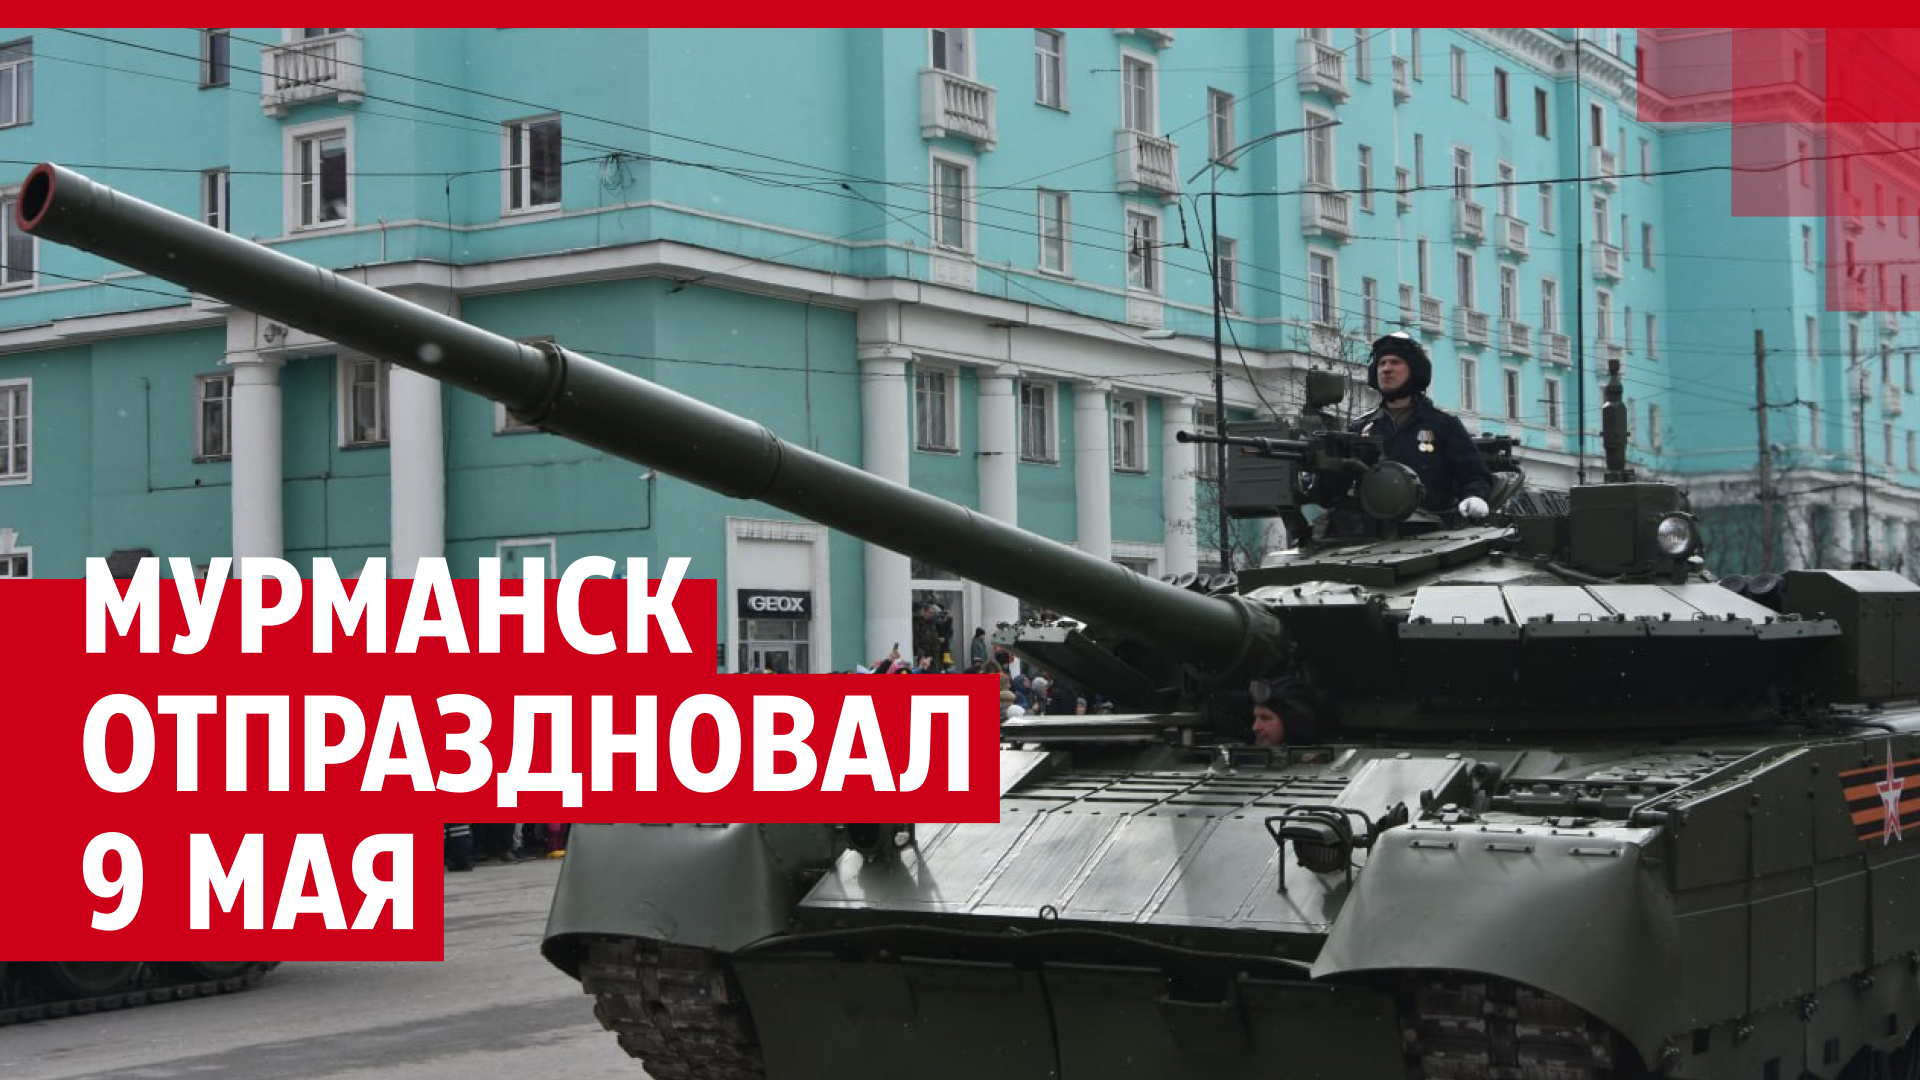 Военная техника, фронтовые песни и бинт вокруг головы: смотрите на видео, как Мурманск отметил 9 Мая